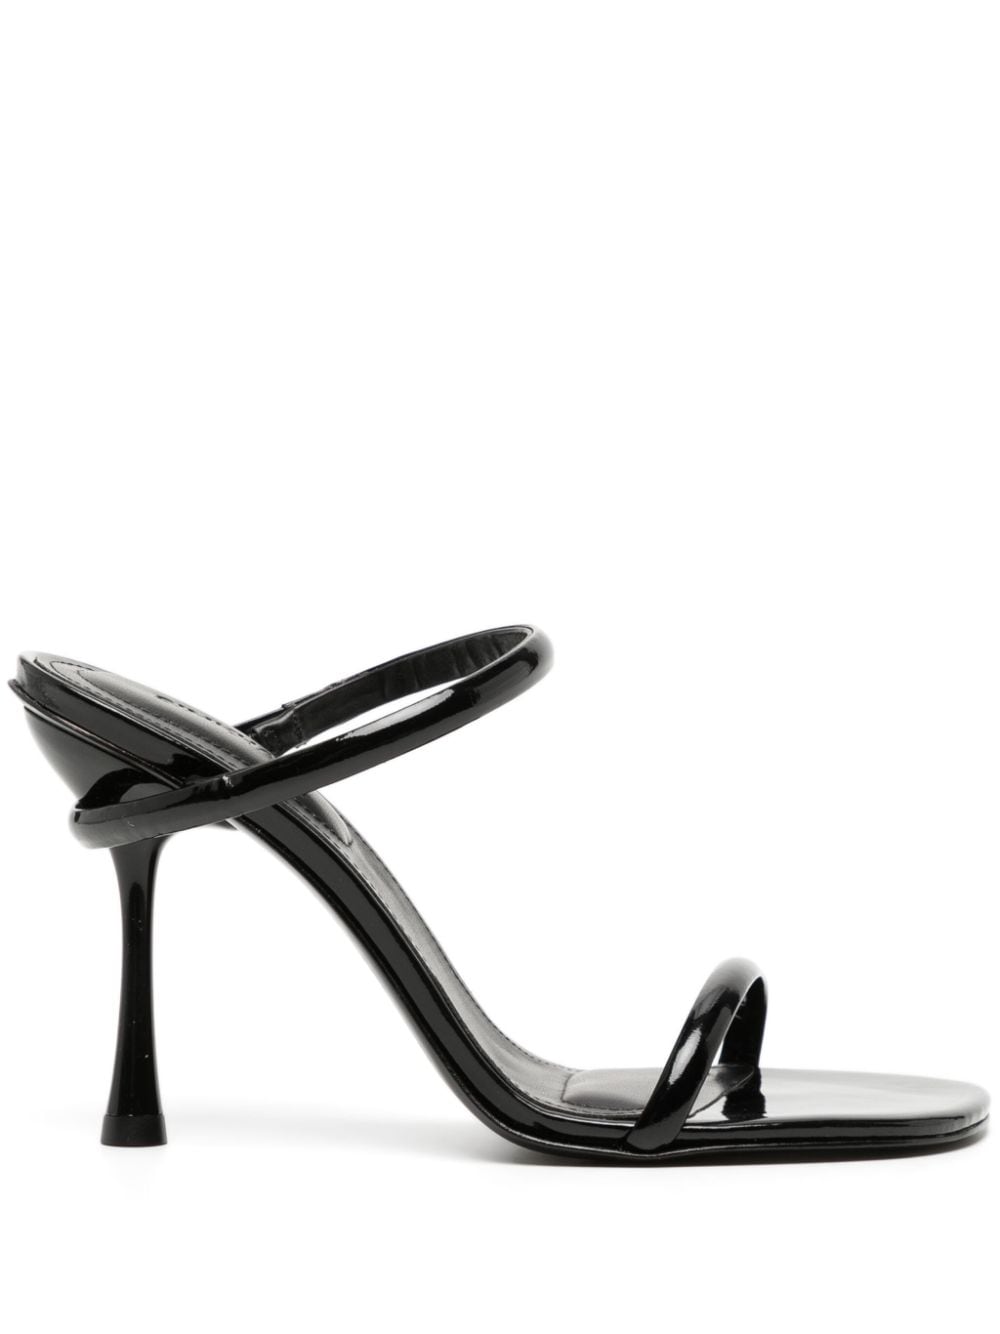 Simkhai Siren 90mm leather sandals - Black von Simkhai